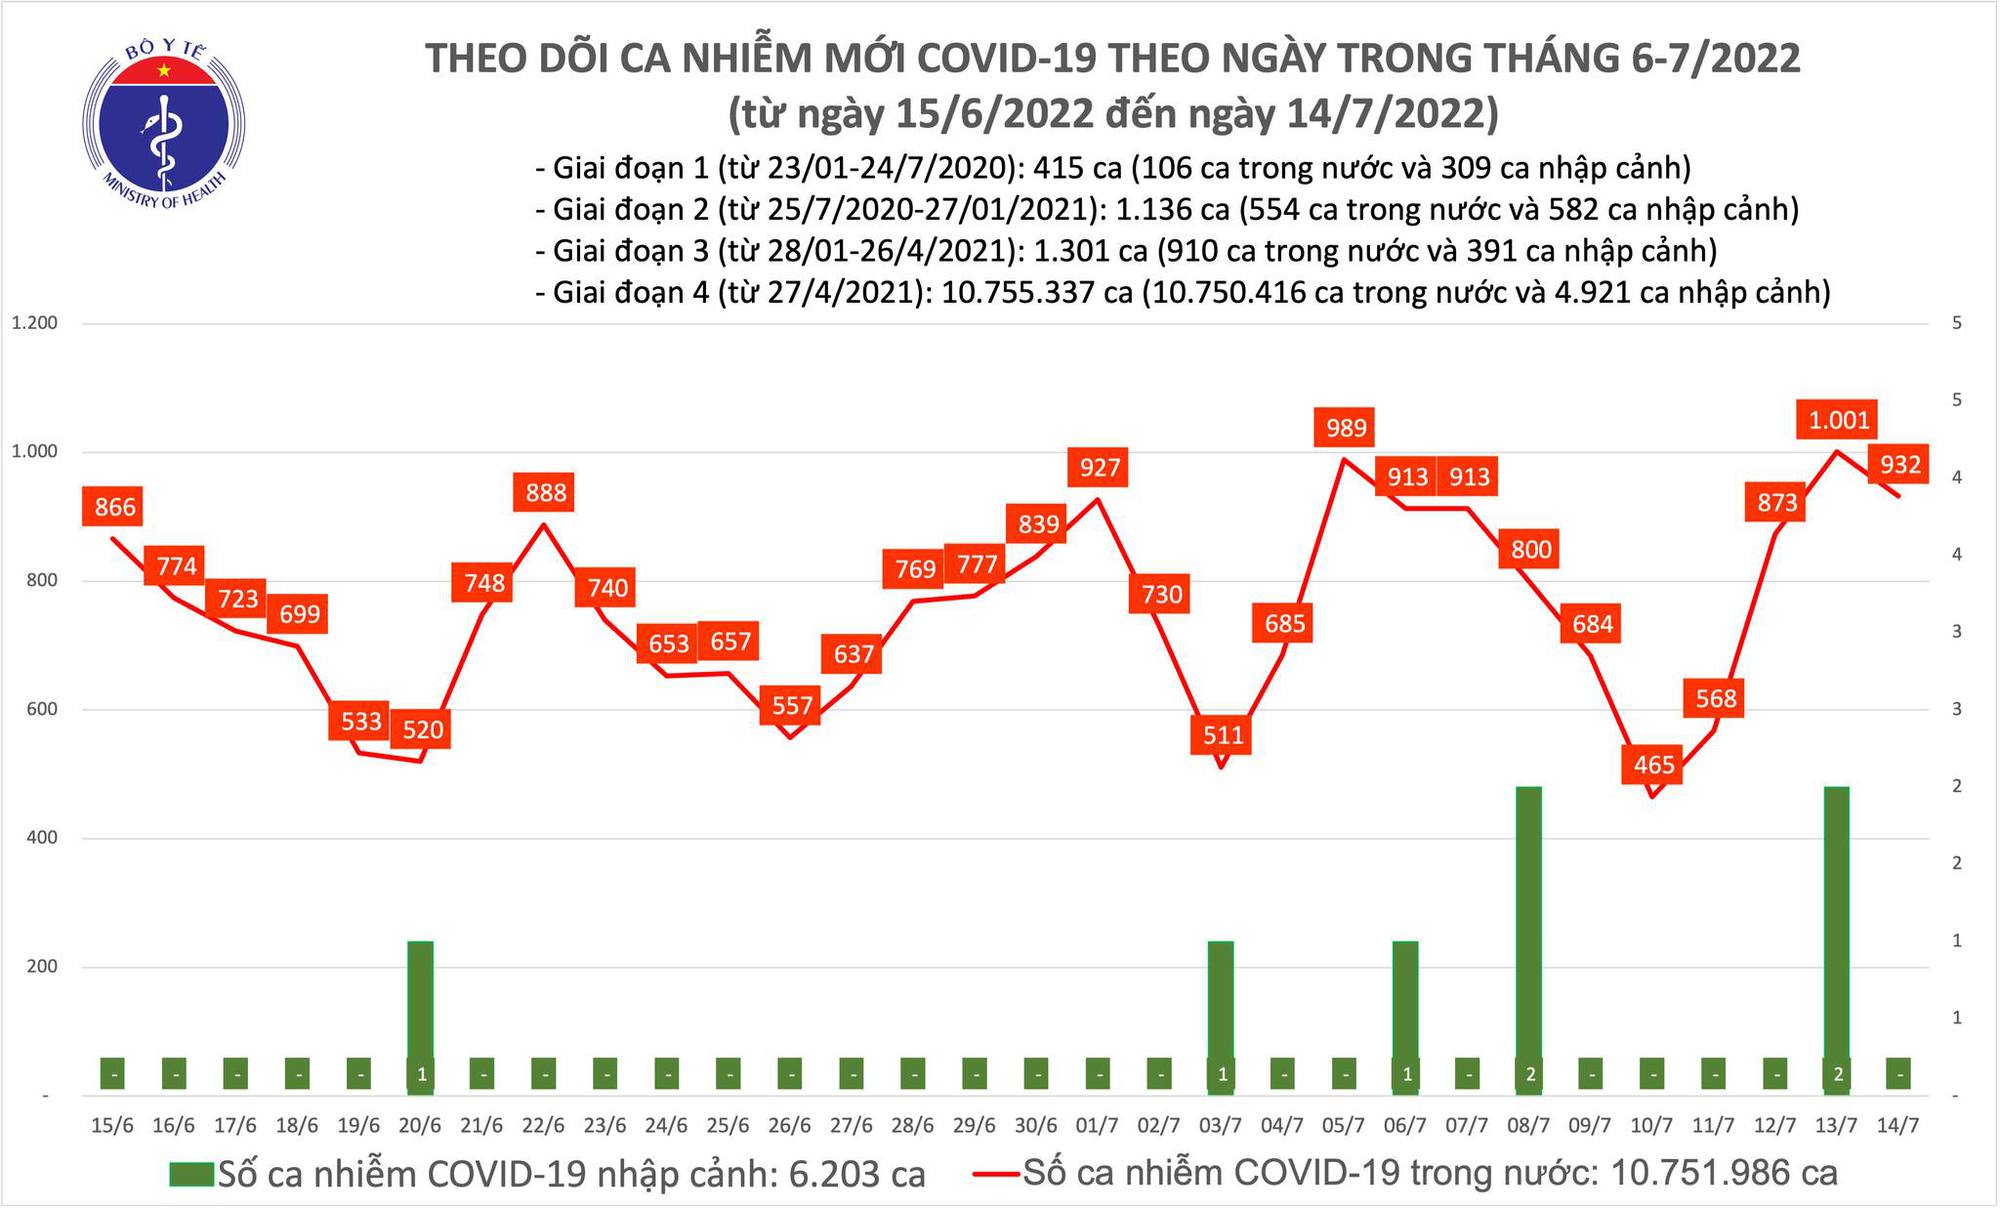 Ngày 14/7: Có 932 ca COVID-19 mới, số khỏi bệnh gấp 9 lần - Ảnh 1.